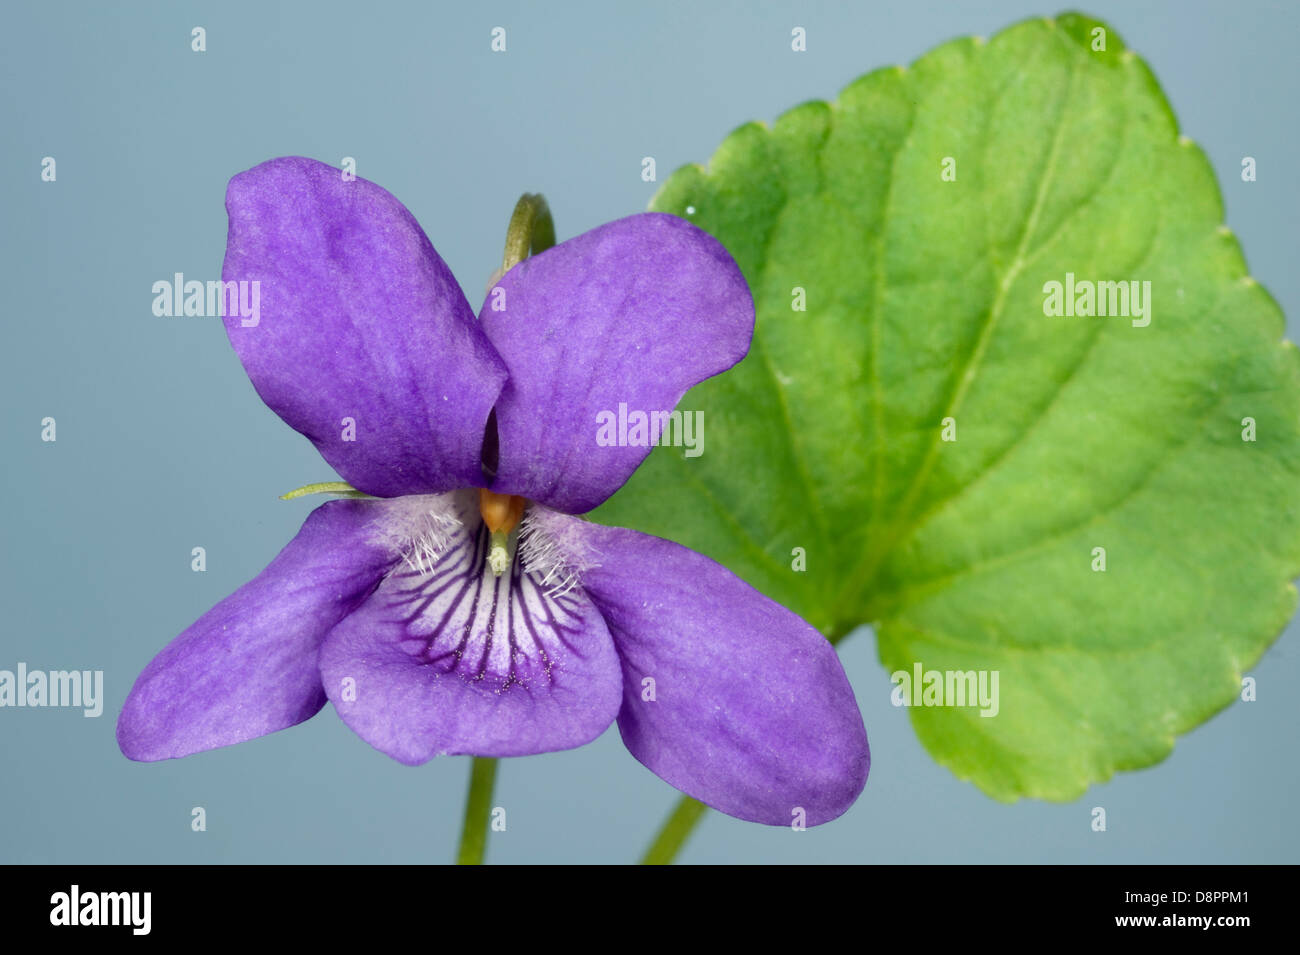 Inizio cane viola, viola reichenbachiana, fiori e foglie Foto Stock